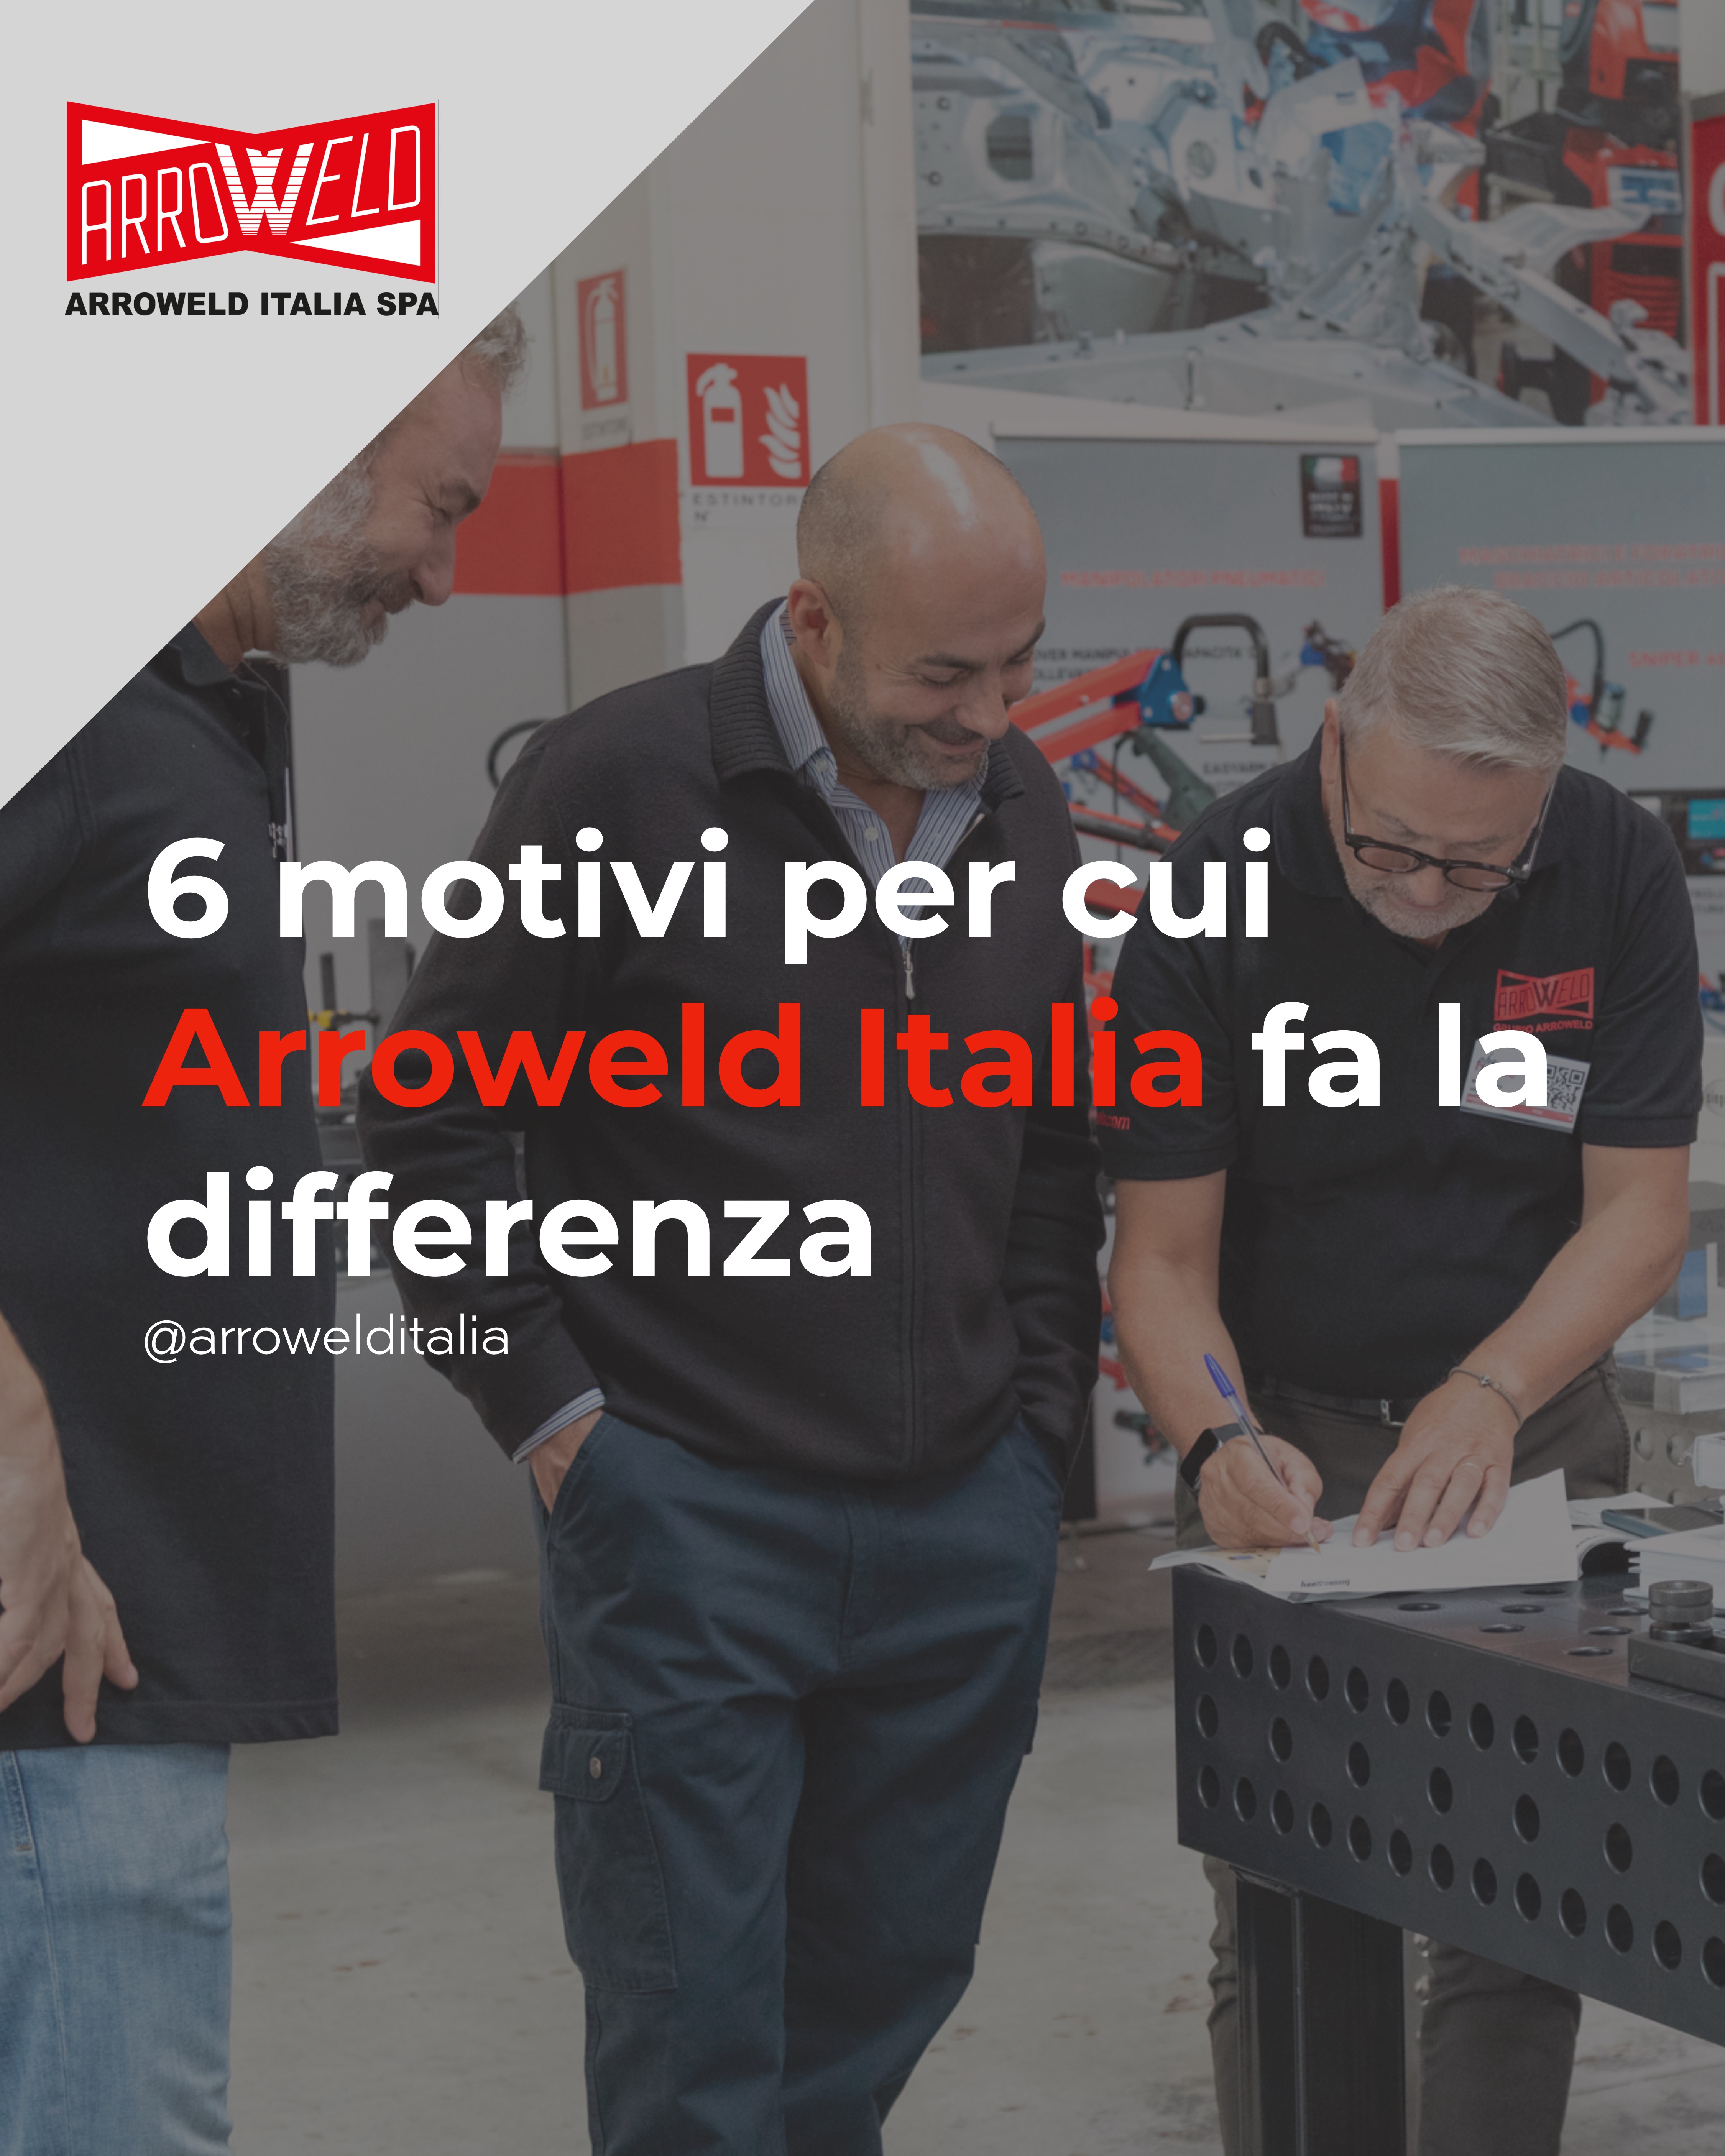 6 motivi per cui Arroweld Italia fa la differenza